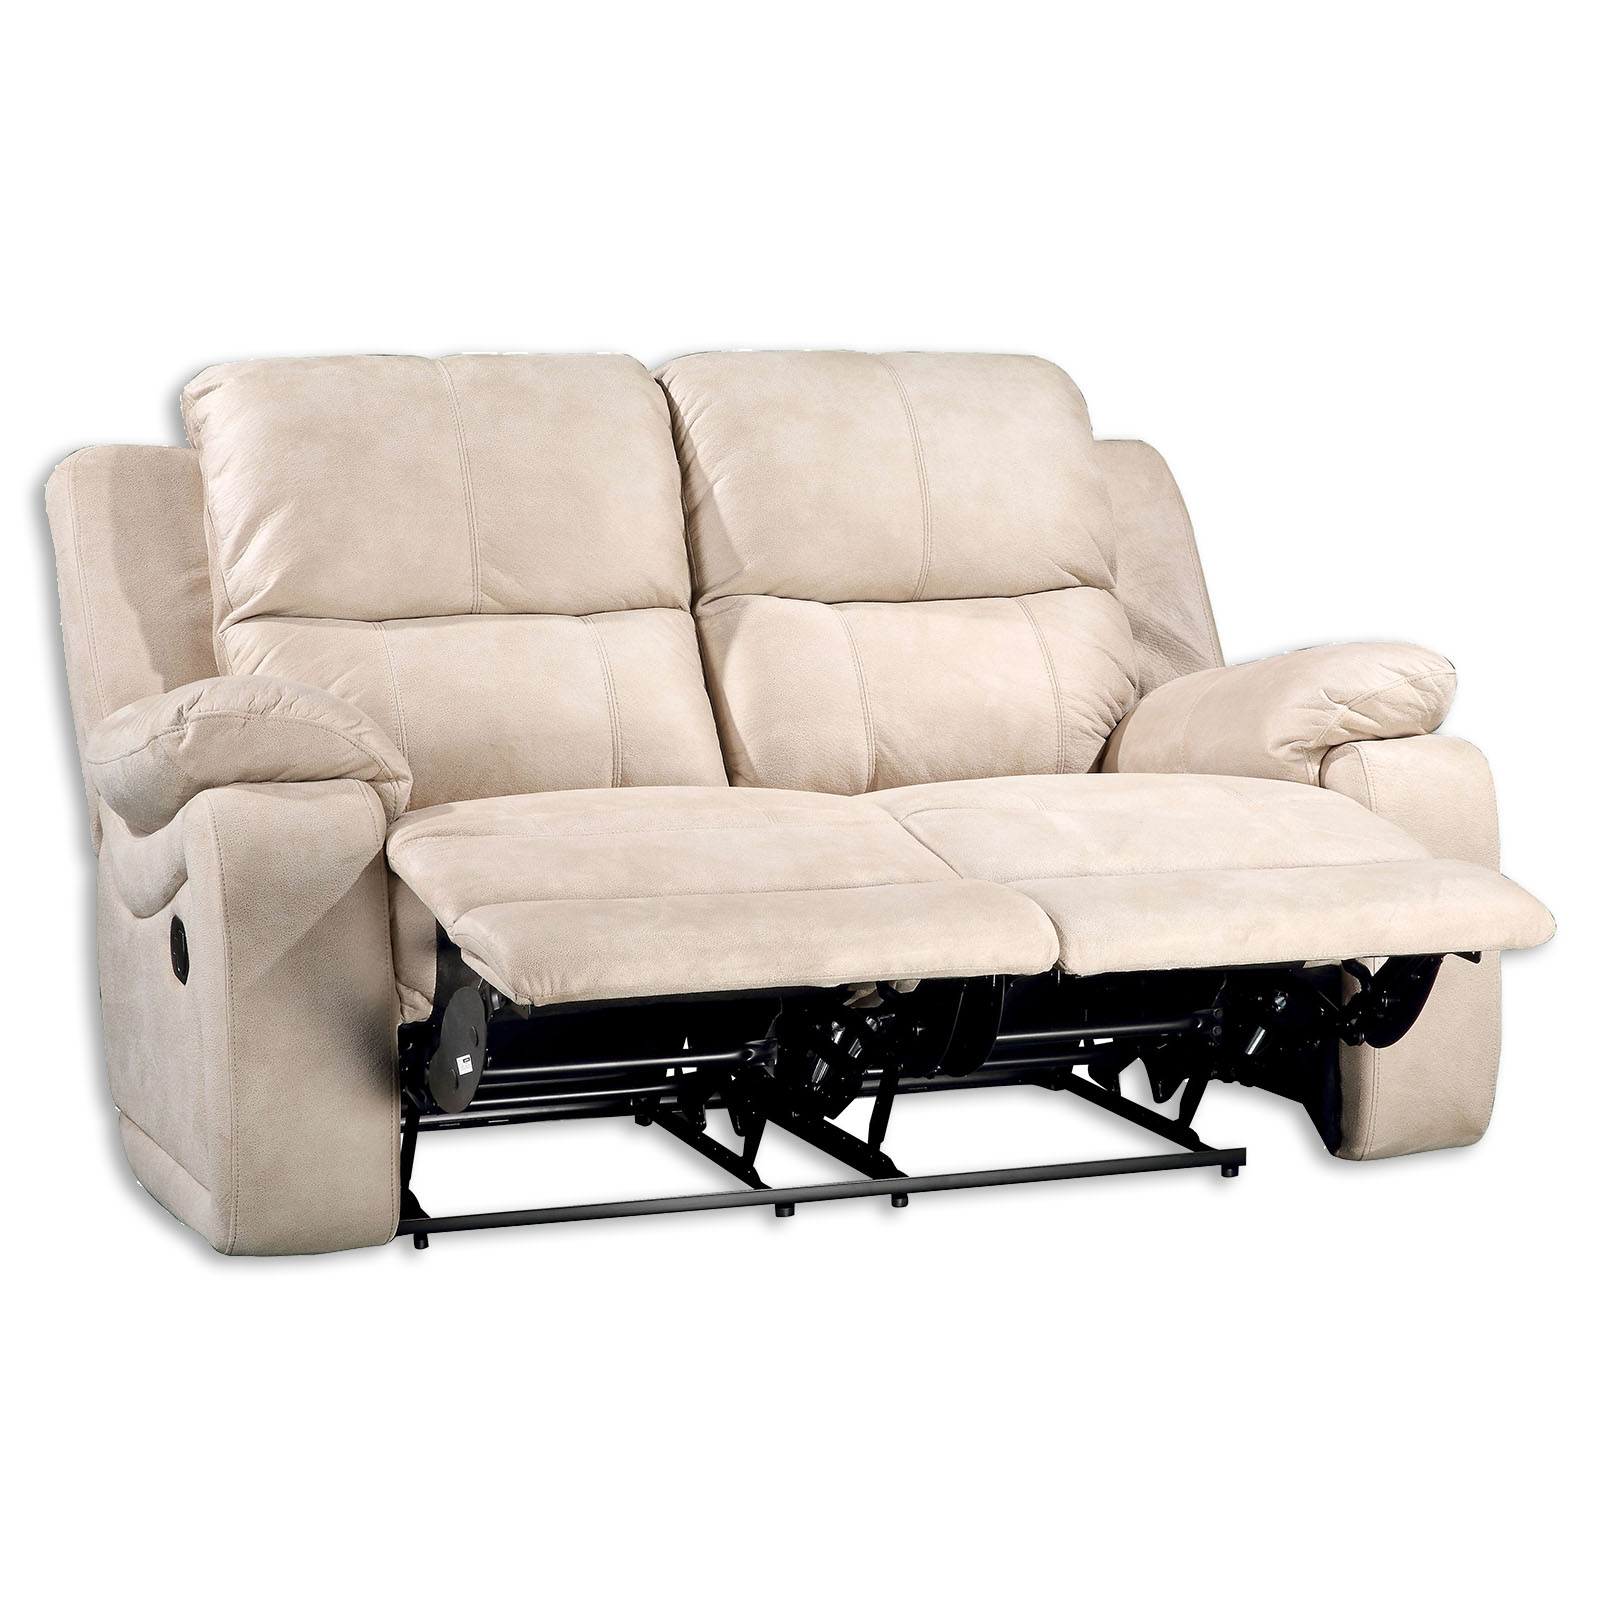 Sofa 2-Sitzer - beige - mit Relaxfunktion | Online bei ...